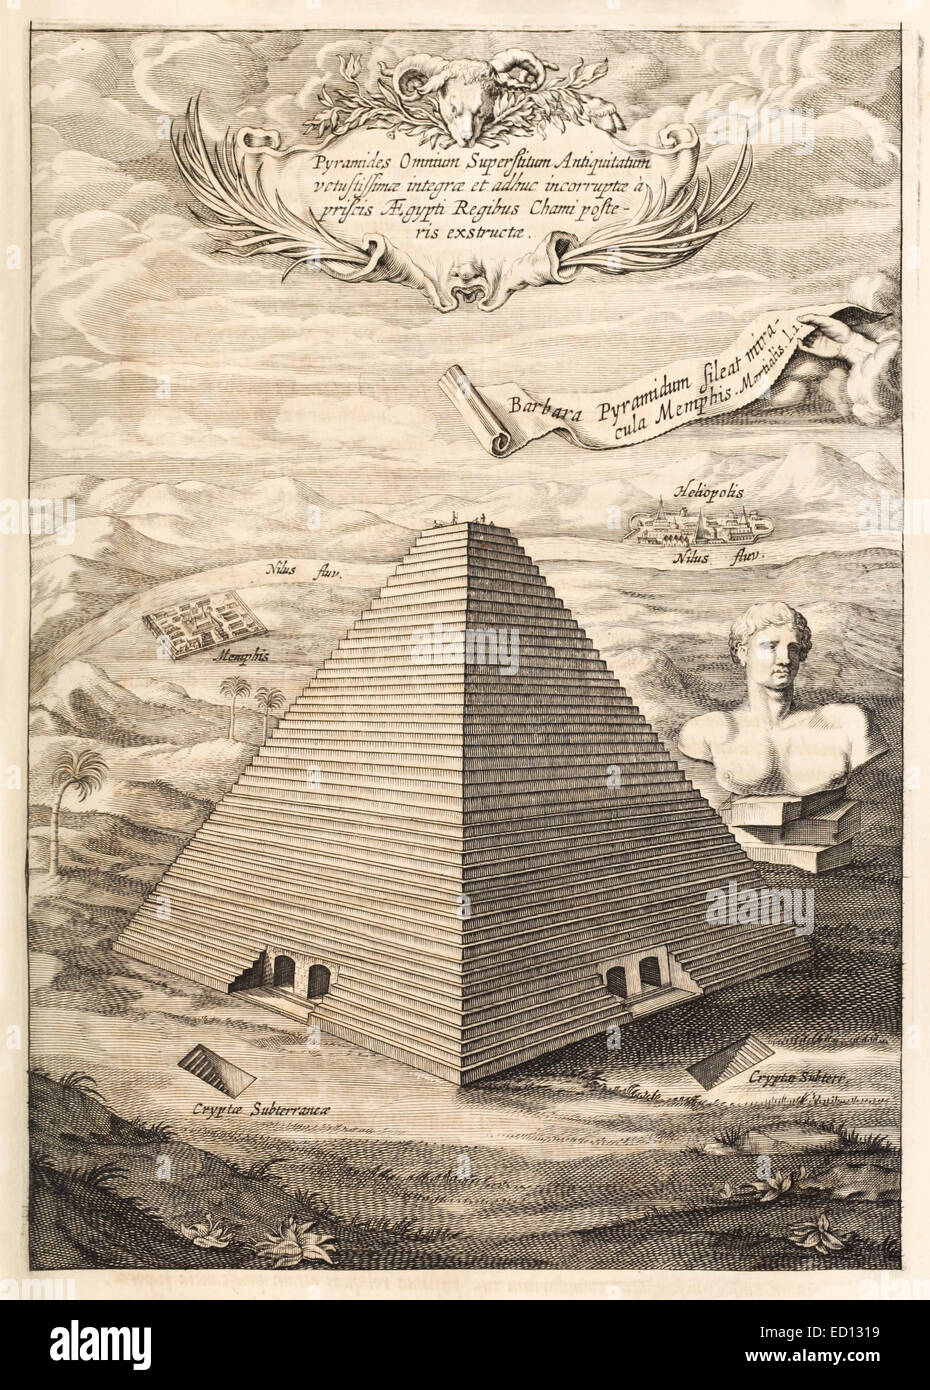 Grande pyramide de Gizeh, une des sept merveilles du monde antique, illustration du 17ème siècle. Voir la description pour plus d'informations. Banque D'Images